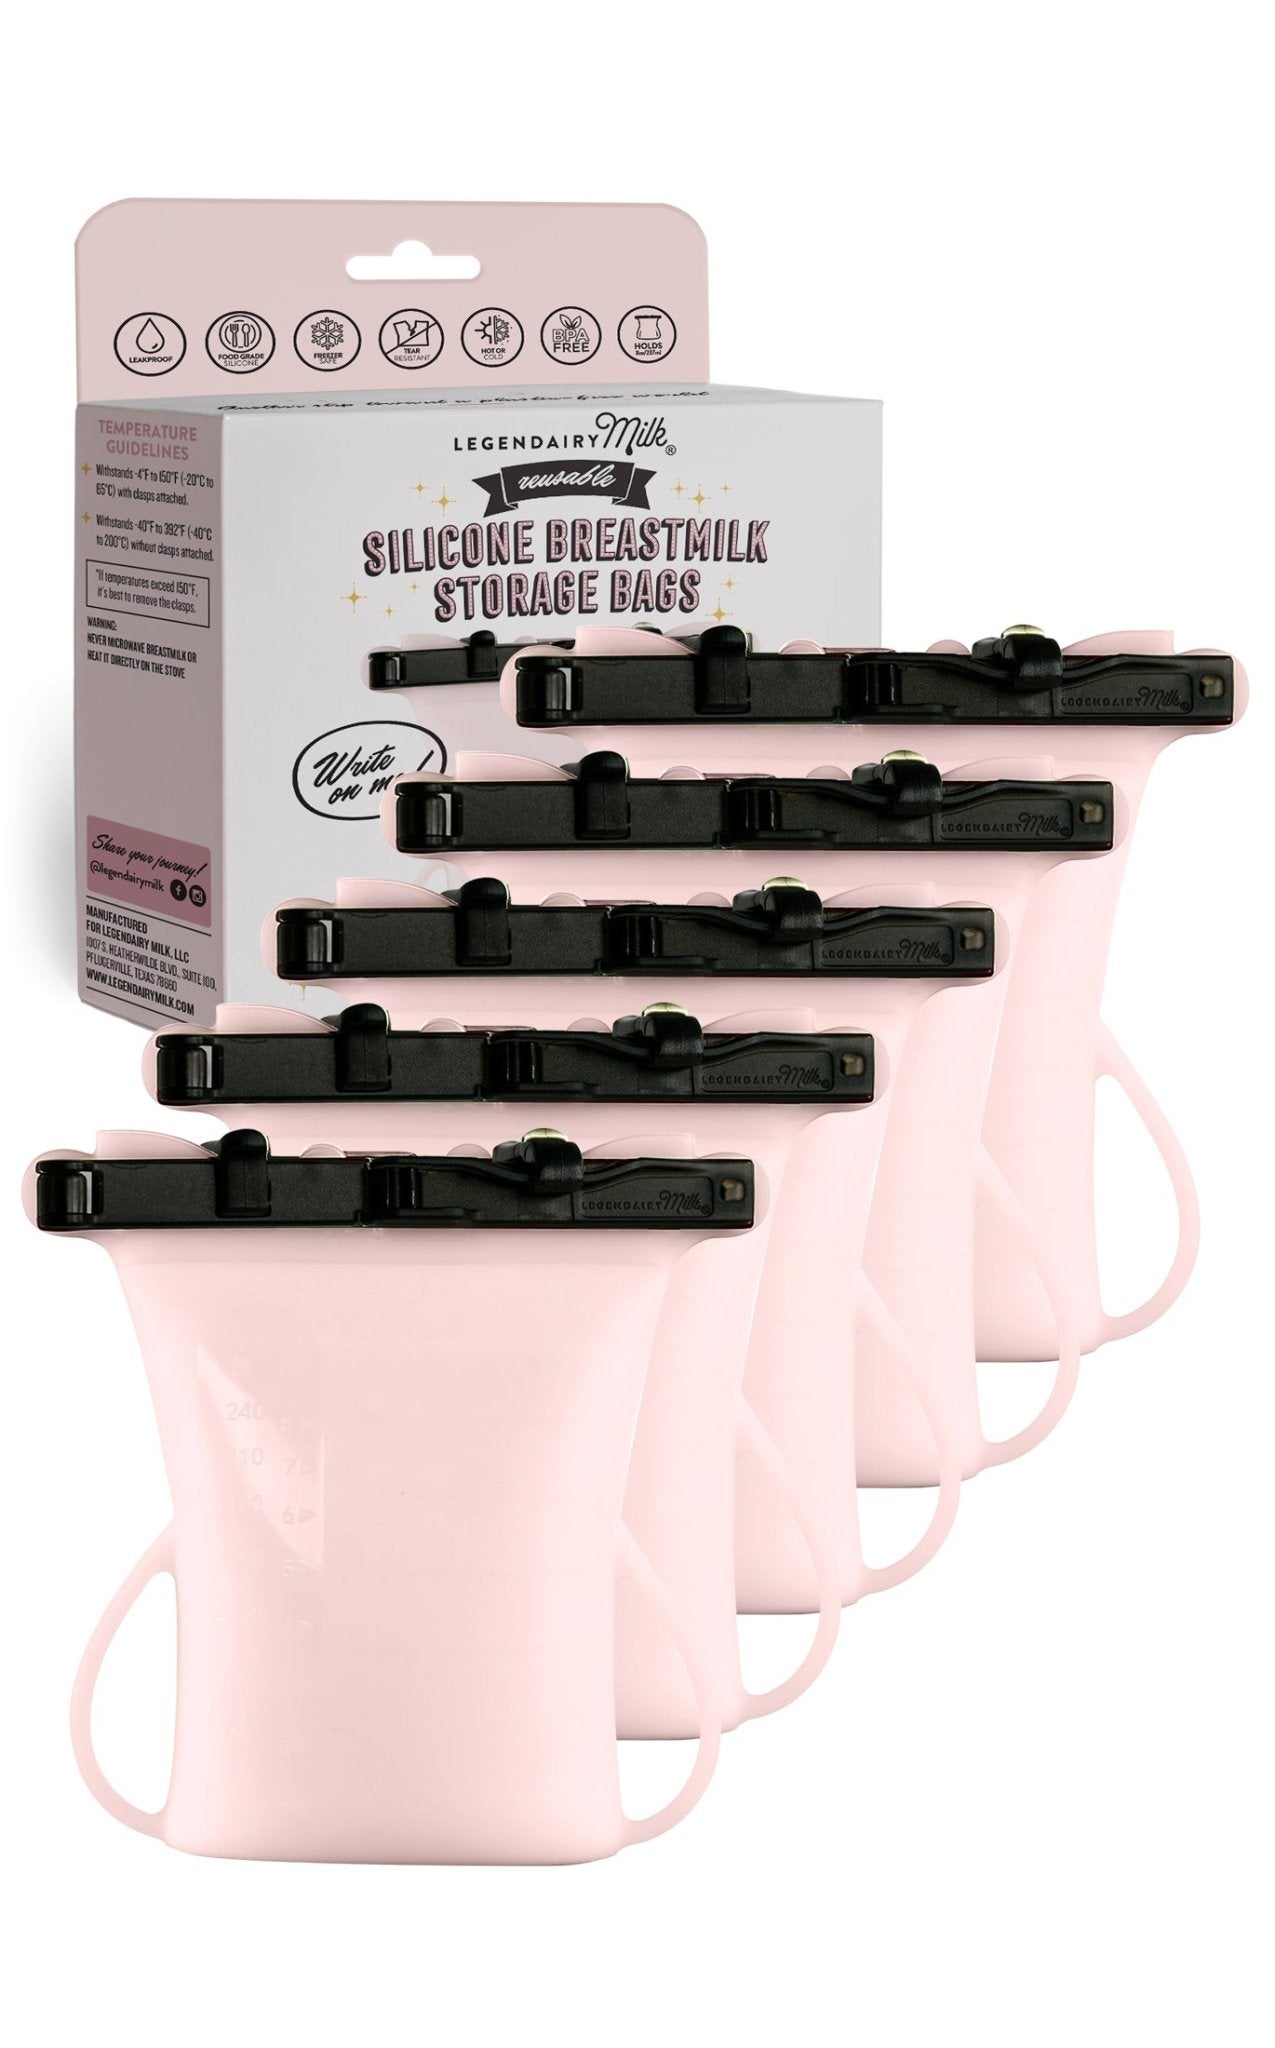 https://www.legendairymilk.com/cdn/shop/products/silicone-breastmilk-storage-bags-180638.jpg?v=1703174378&width=1445